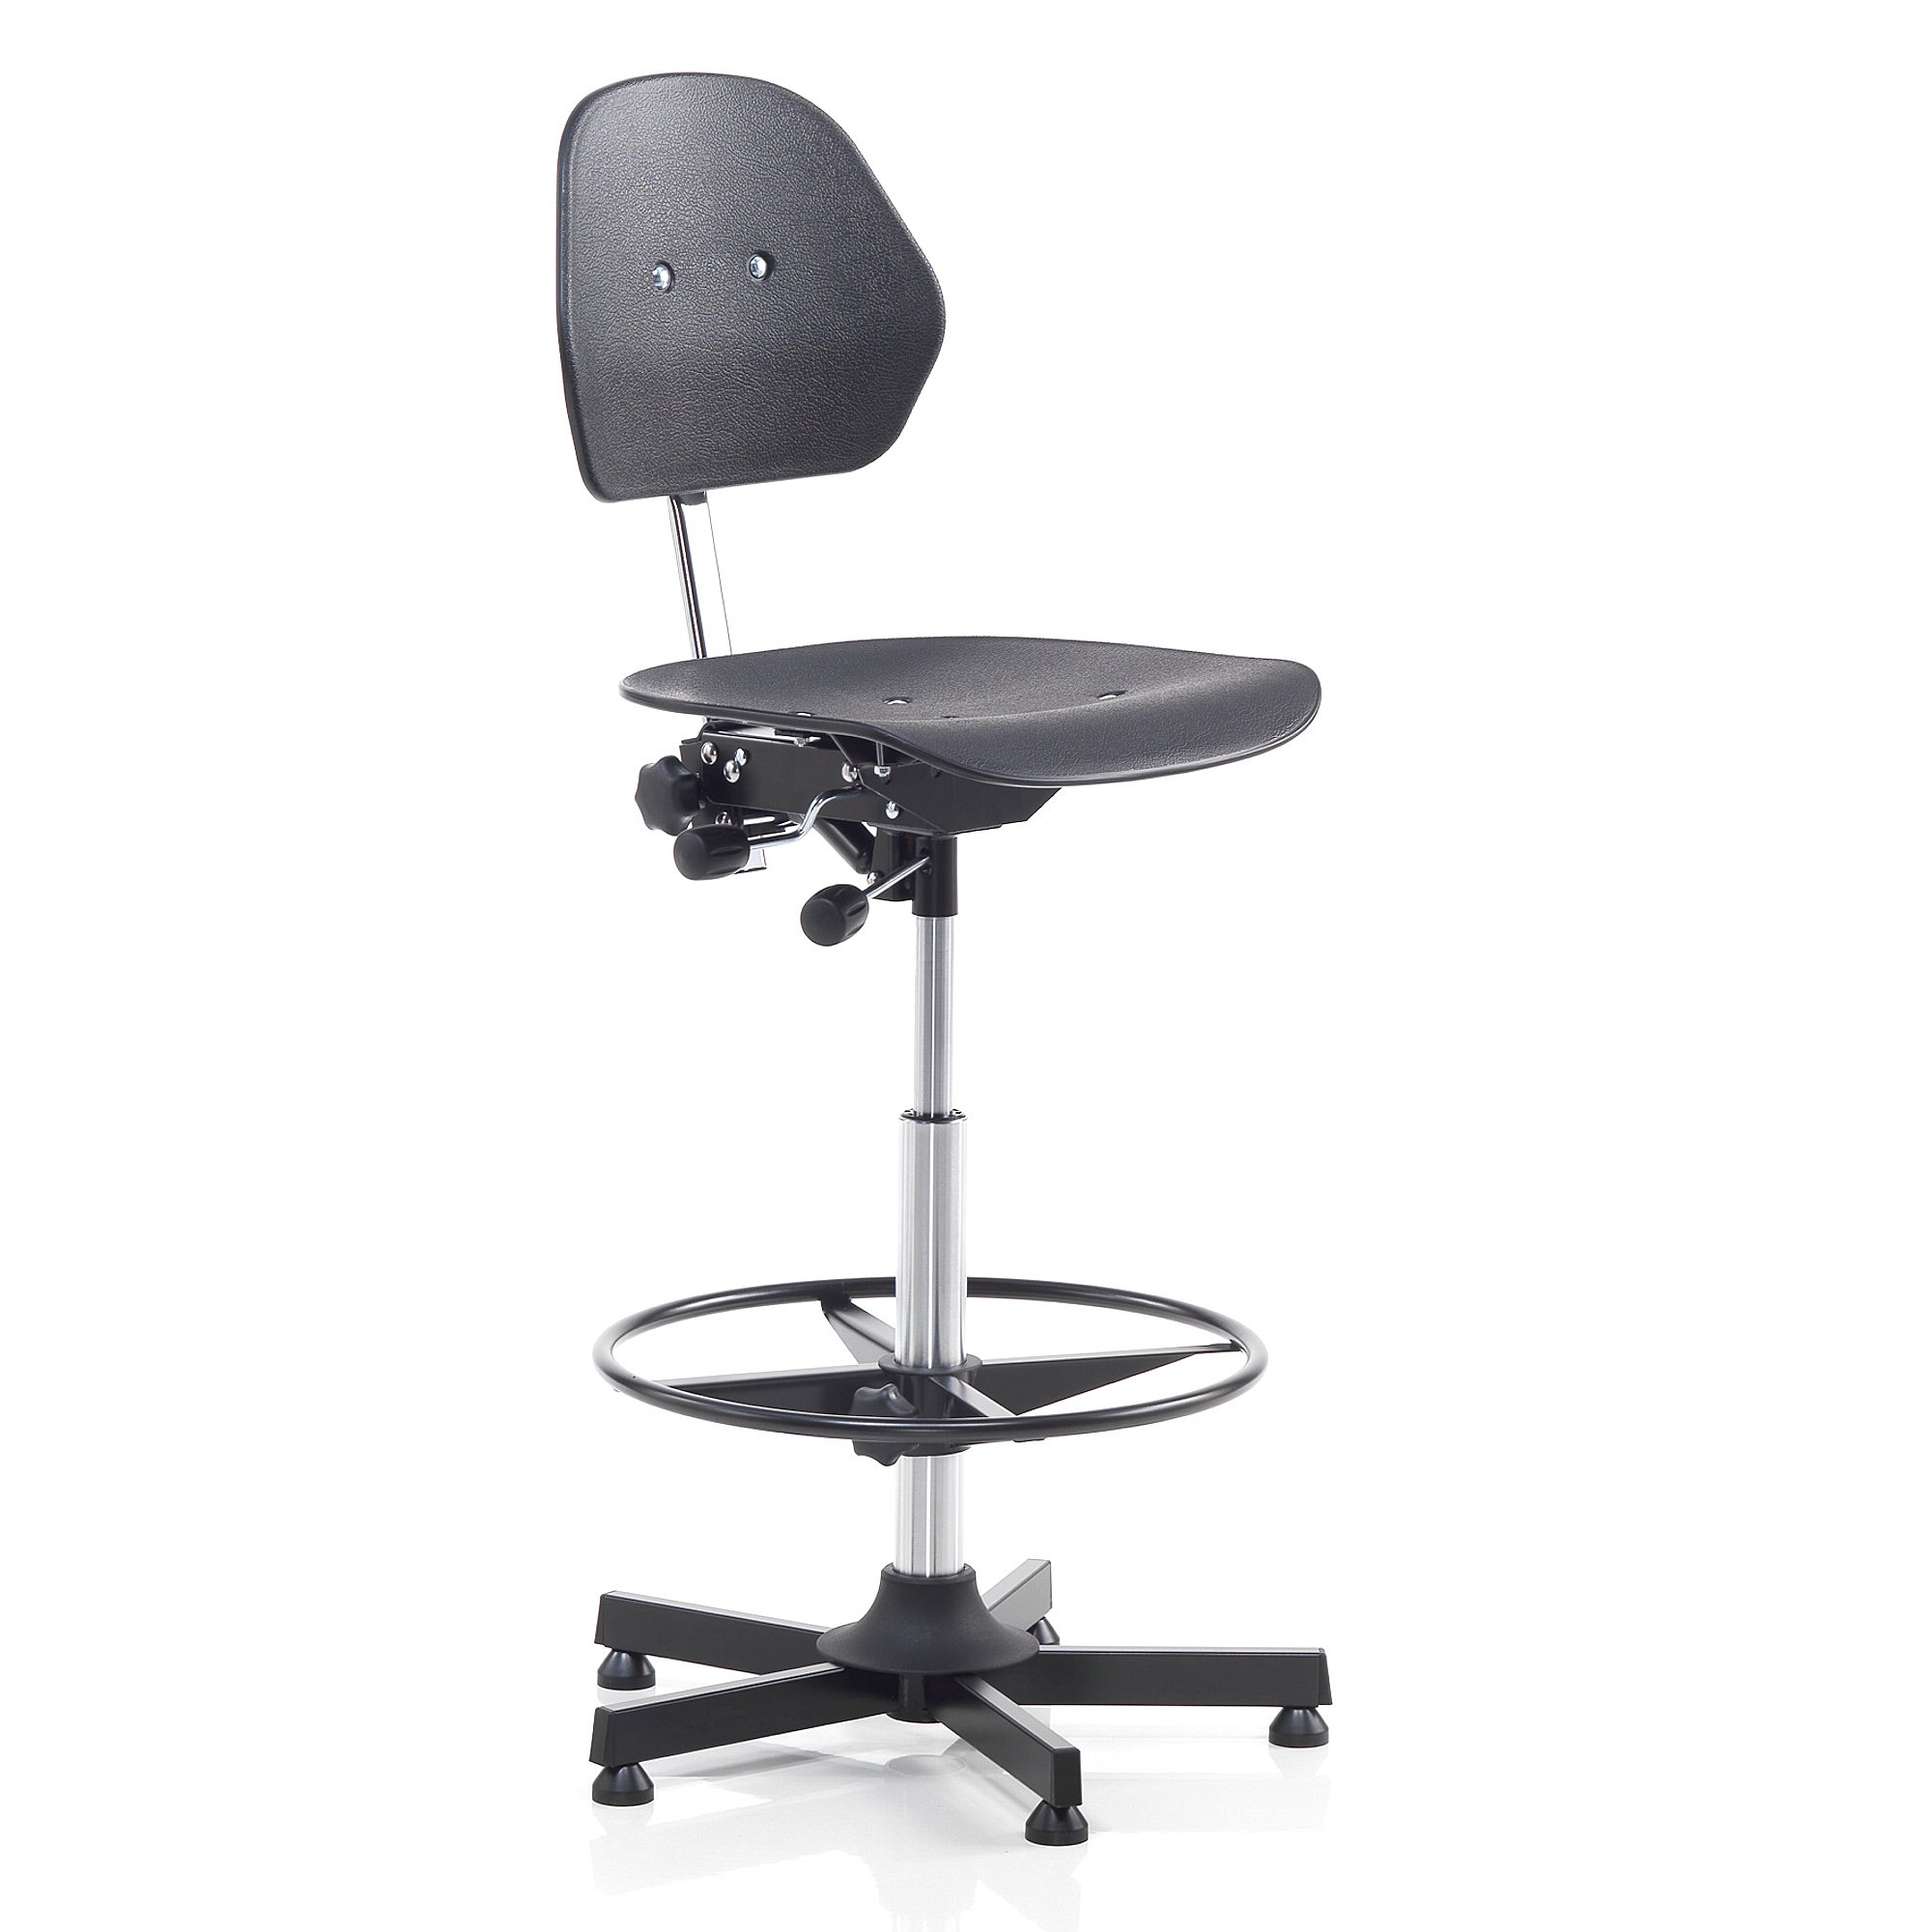 E-shop Pracovná dielenská stolička CLAYTON, výška 650-900 mm, čierna